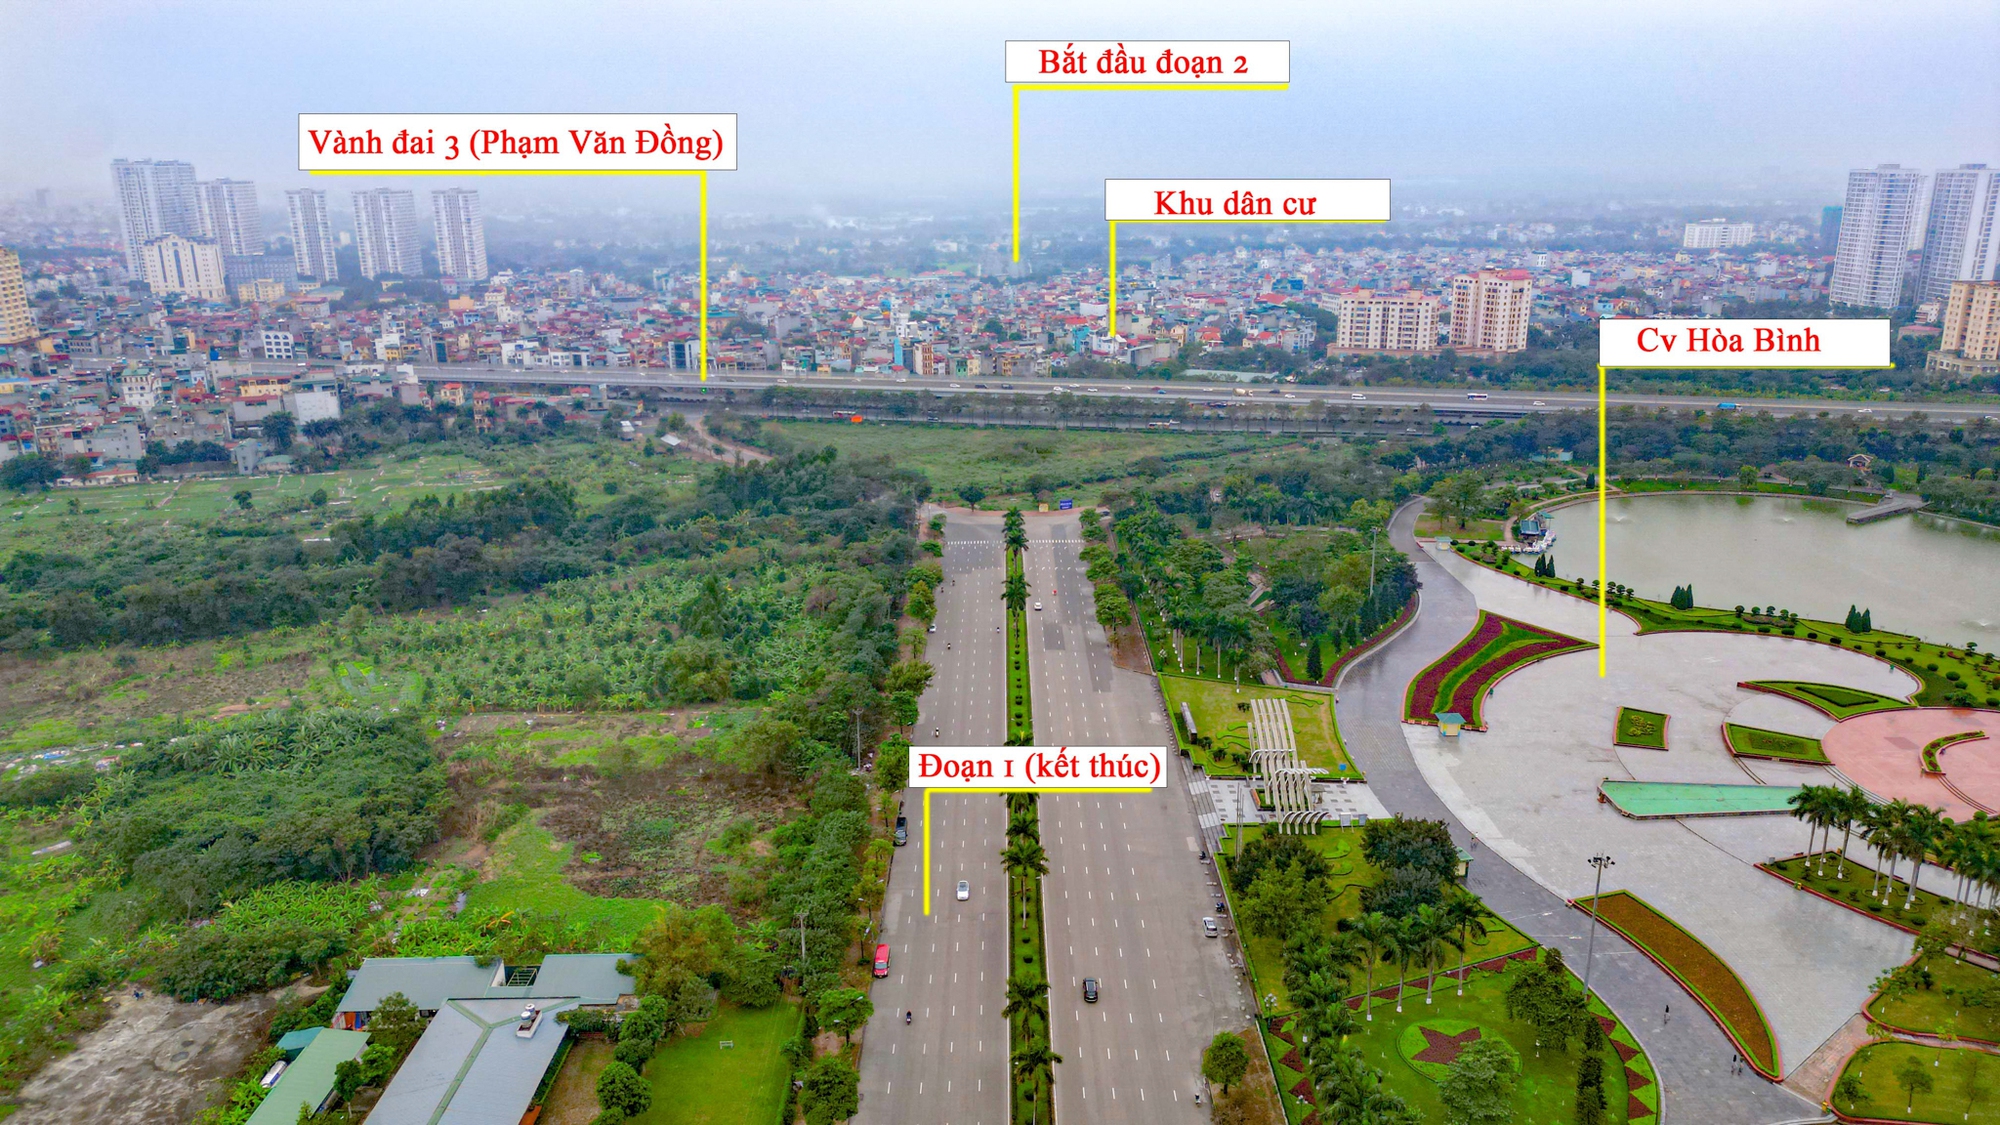 Toàn cảnh tuyến đường 10 làn xe xuyên qua khu đô thị đắt đỏ bậc nhất Hà Nội, tương lai sẽ làm thay đổi toàn bộ bất động sản trục Hồ Tây - Ba Vì- Ảnh 4.